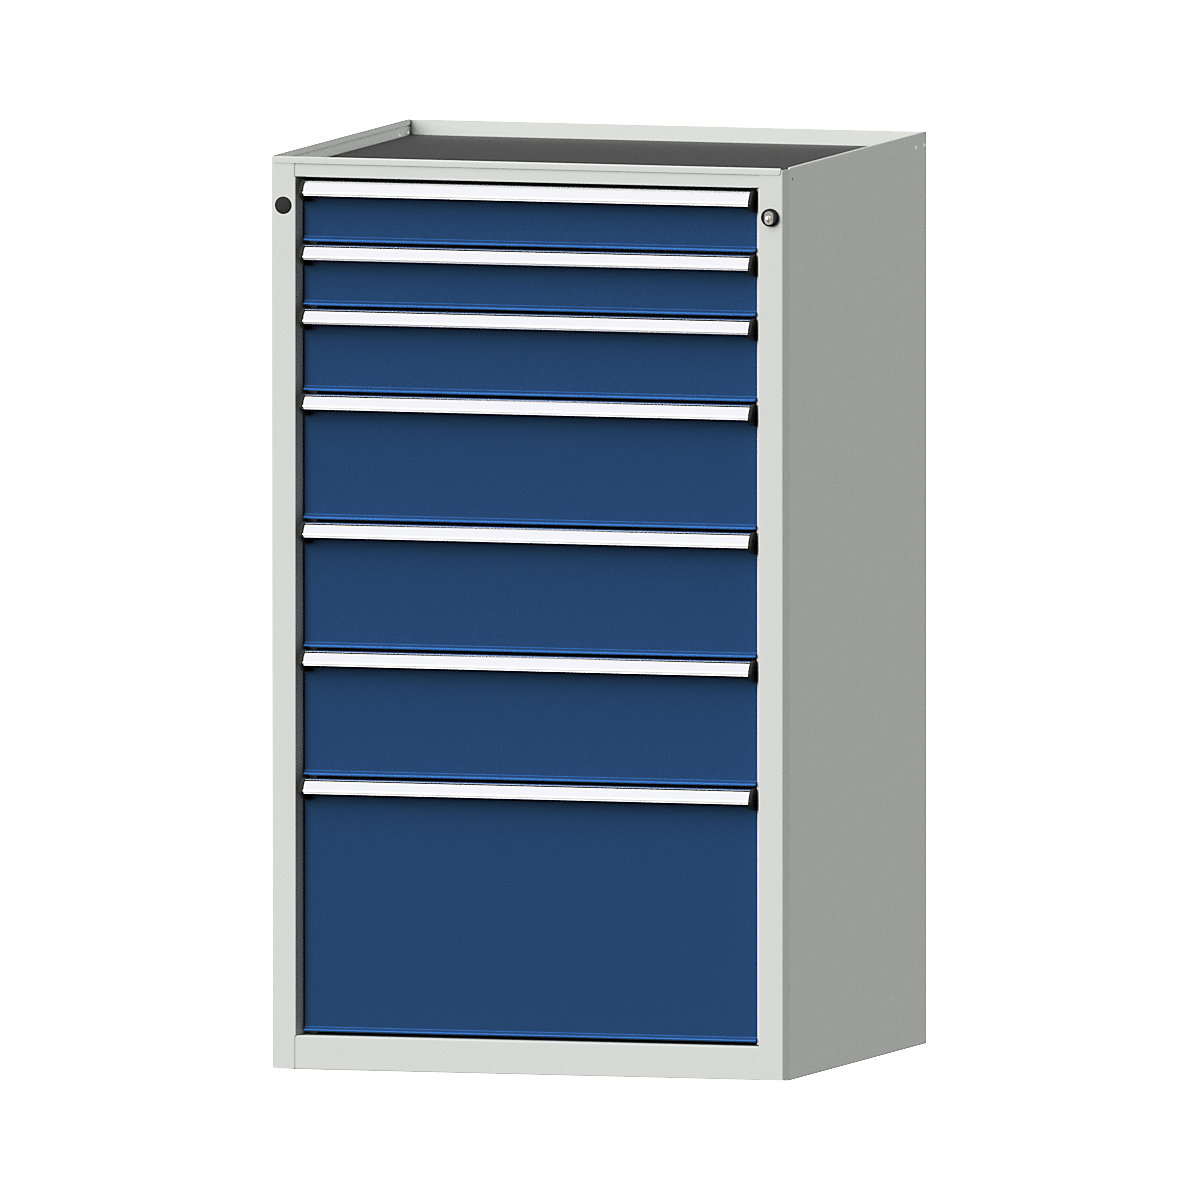 Zásuvková skříň – ANKE, š x h 760 x 675 mm, nosnost zásuvky 200 kg, 7 zásuvek, výška 1280 mm, čelo hořcově modré